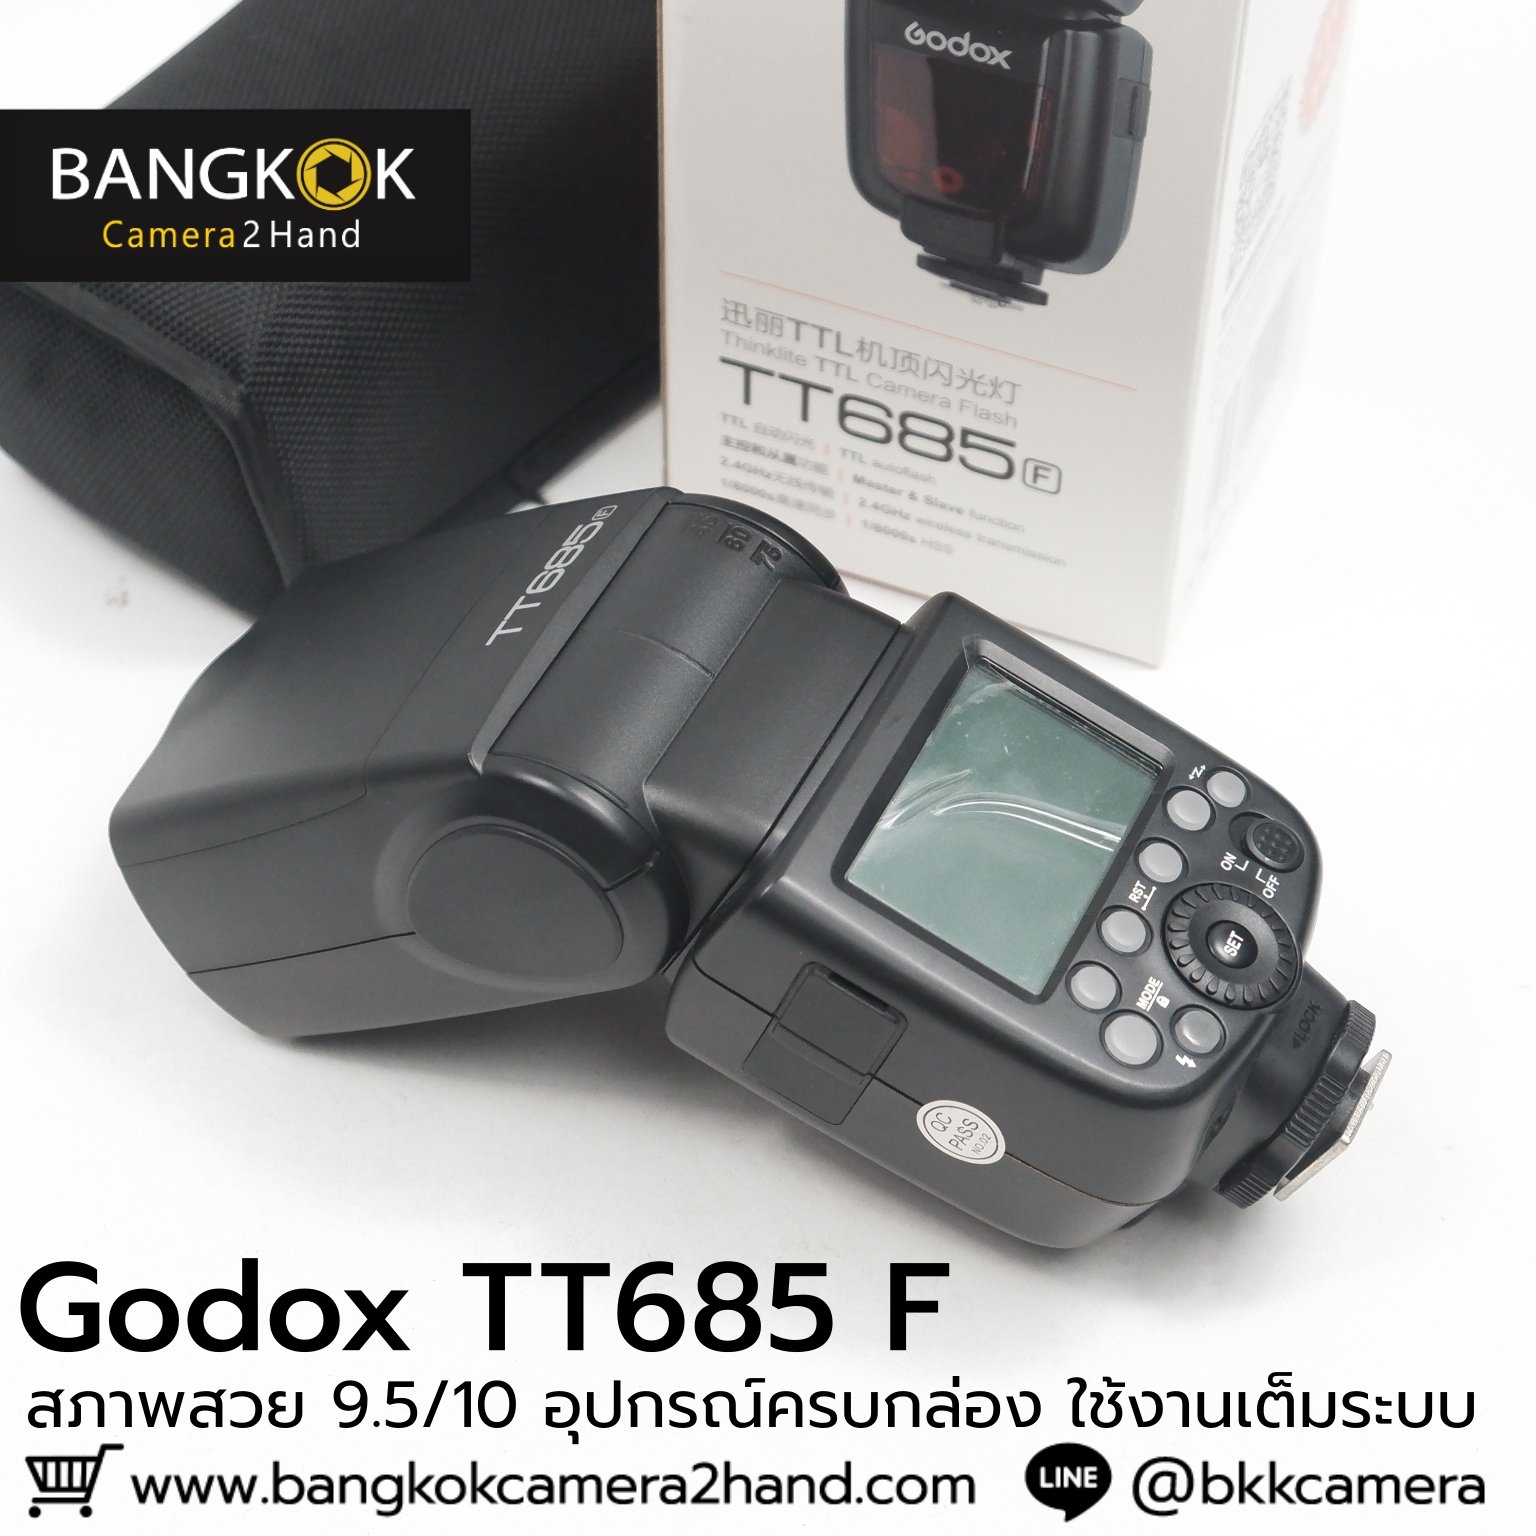 人気ブレゼント! Godox Tt685f - linsar.com